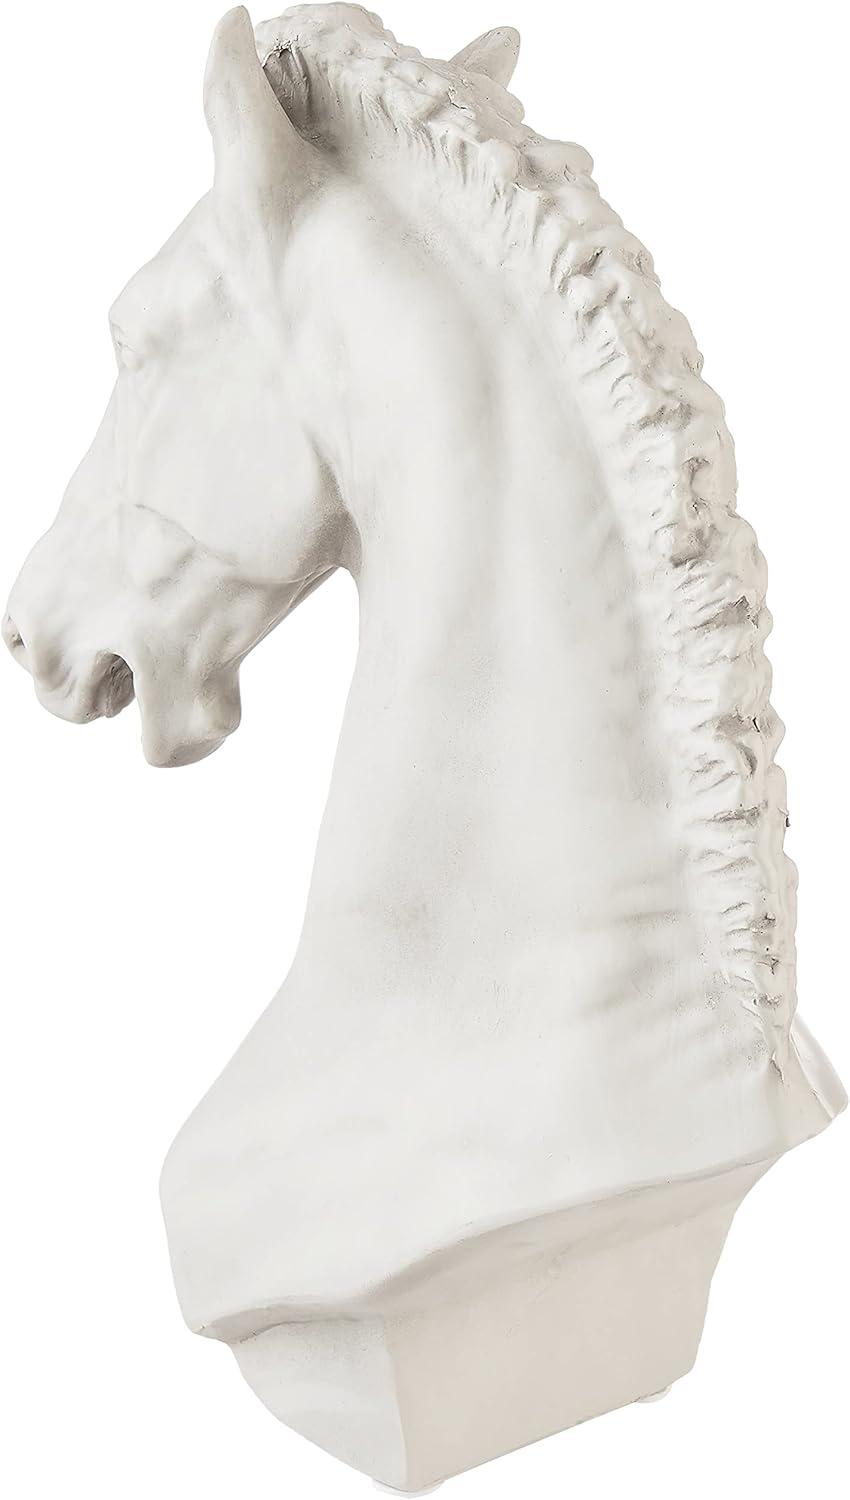 Elegant Turino Horse Statue 12" Resin Art Sculpture